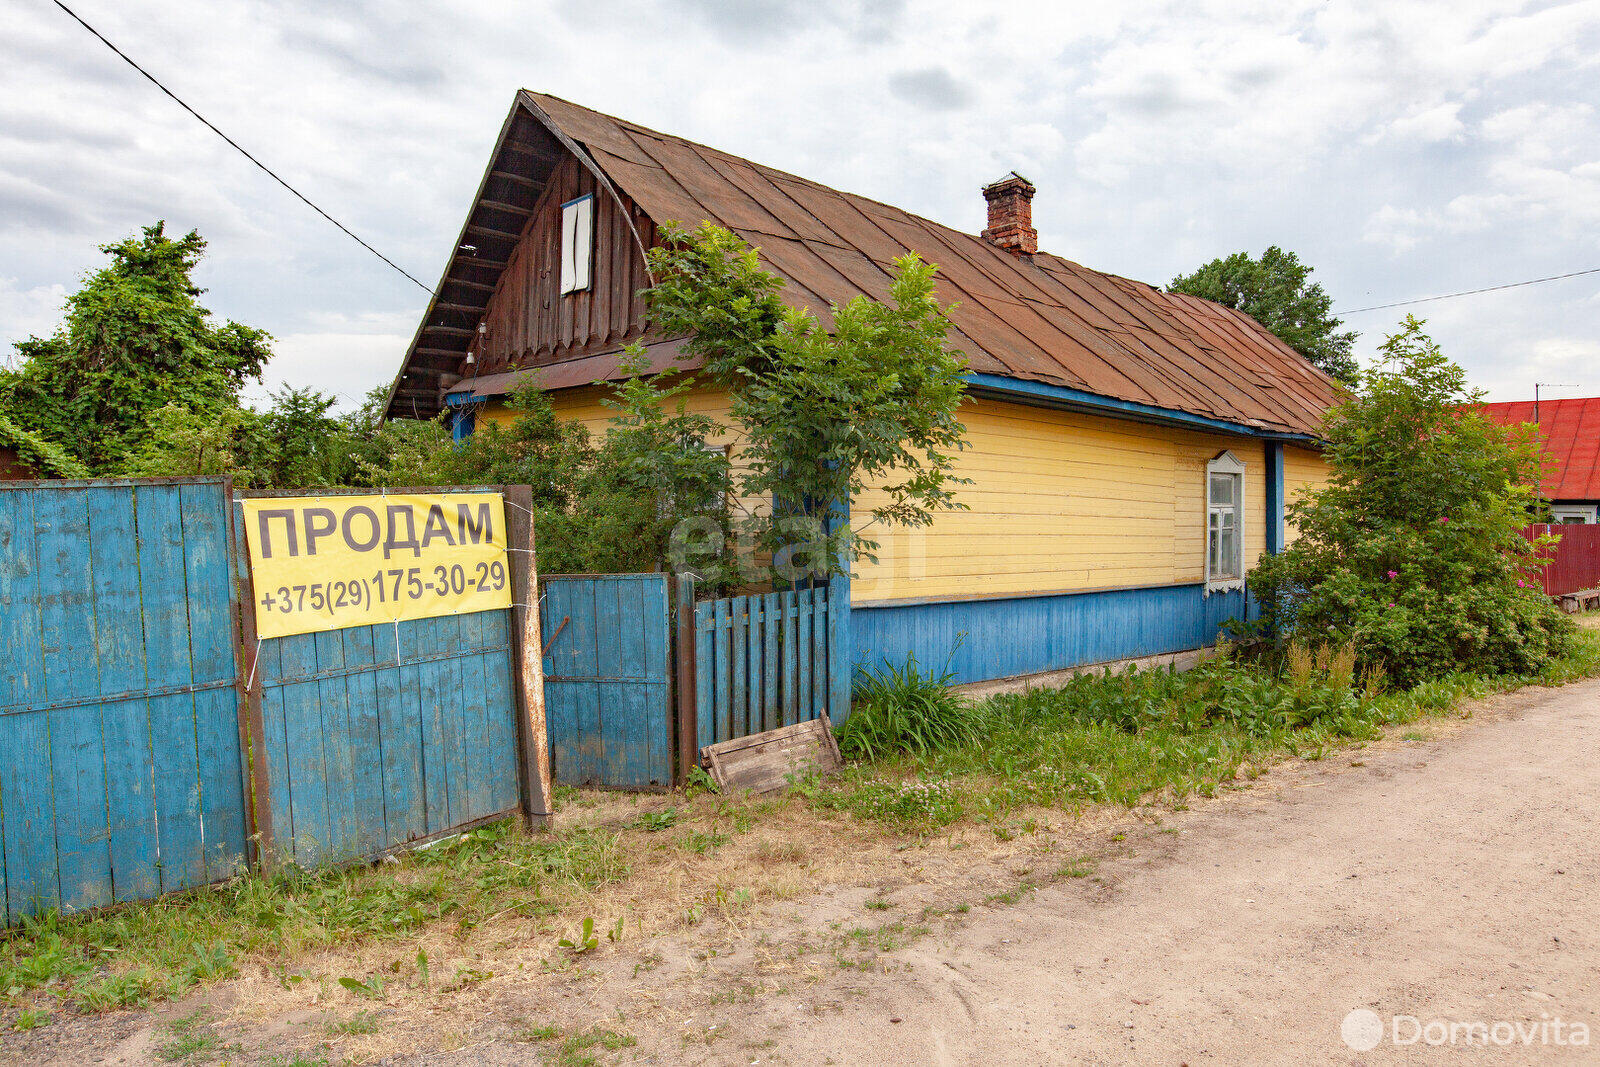 Продать 1-этажный дом в Дукоре, Минская область ул. Минская, 15000USD, код 626512 - фото 1